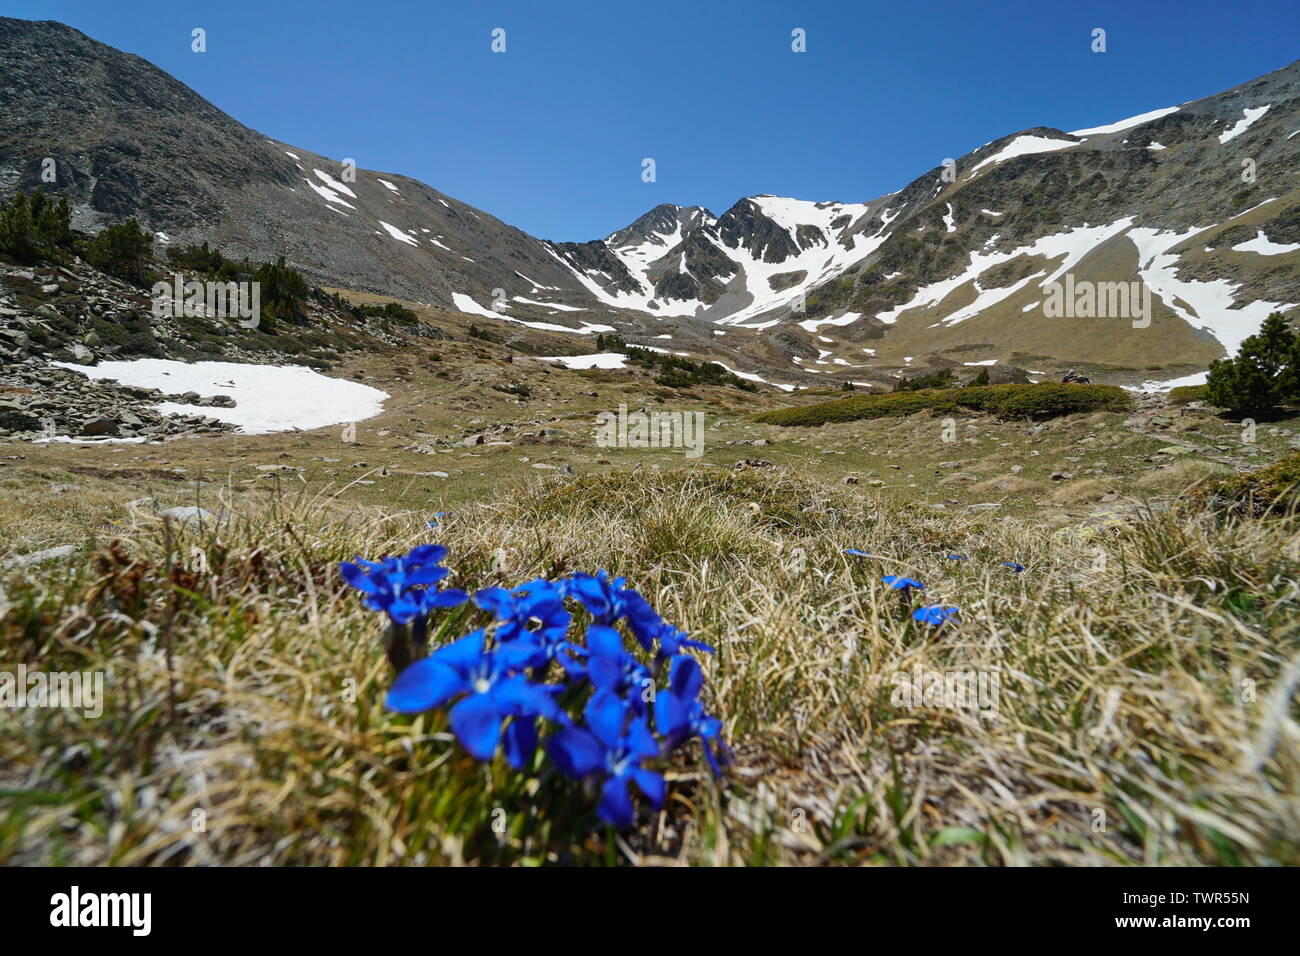 Paesaggio di montagna del massiccio del Carlit con fiori blu in primo piano, Francia, Pyrenees-Orientales, parco naturale dei Pirenei catalani Foto Stock